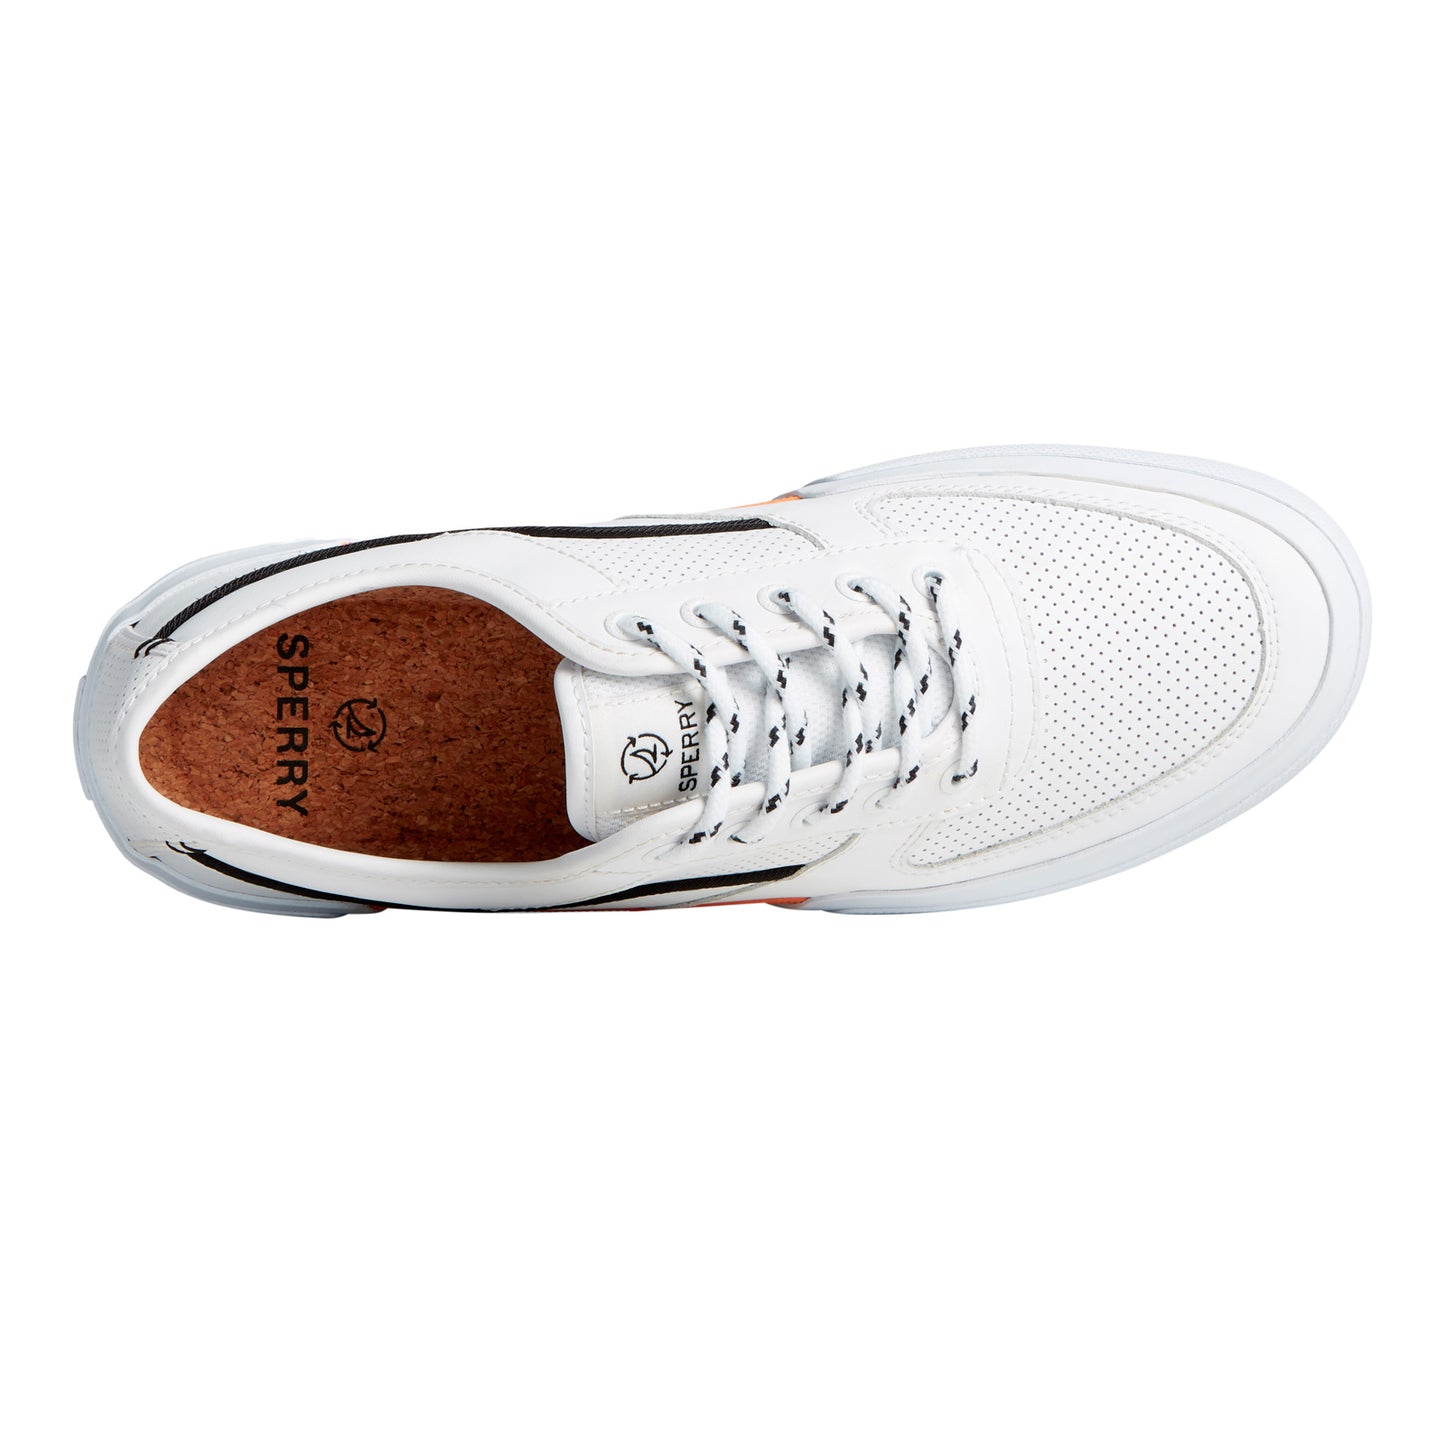 Peltz Shoes  Men's Sperry Soletide 2 Eye Seacycled Sneaker White Multi STS25539